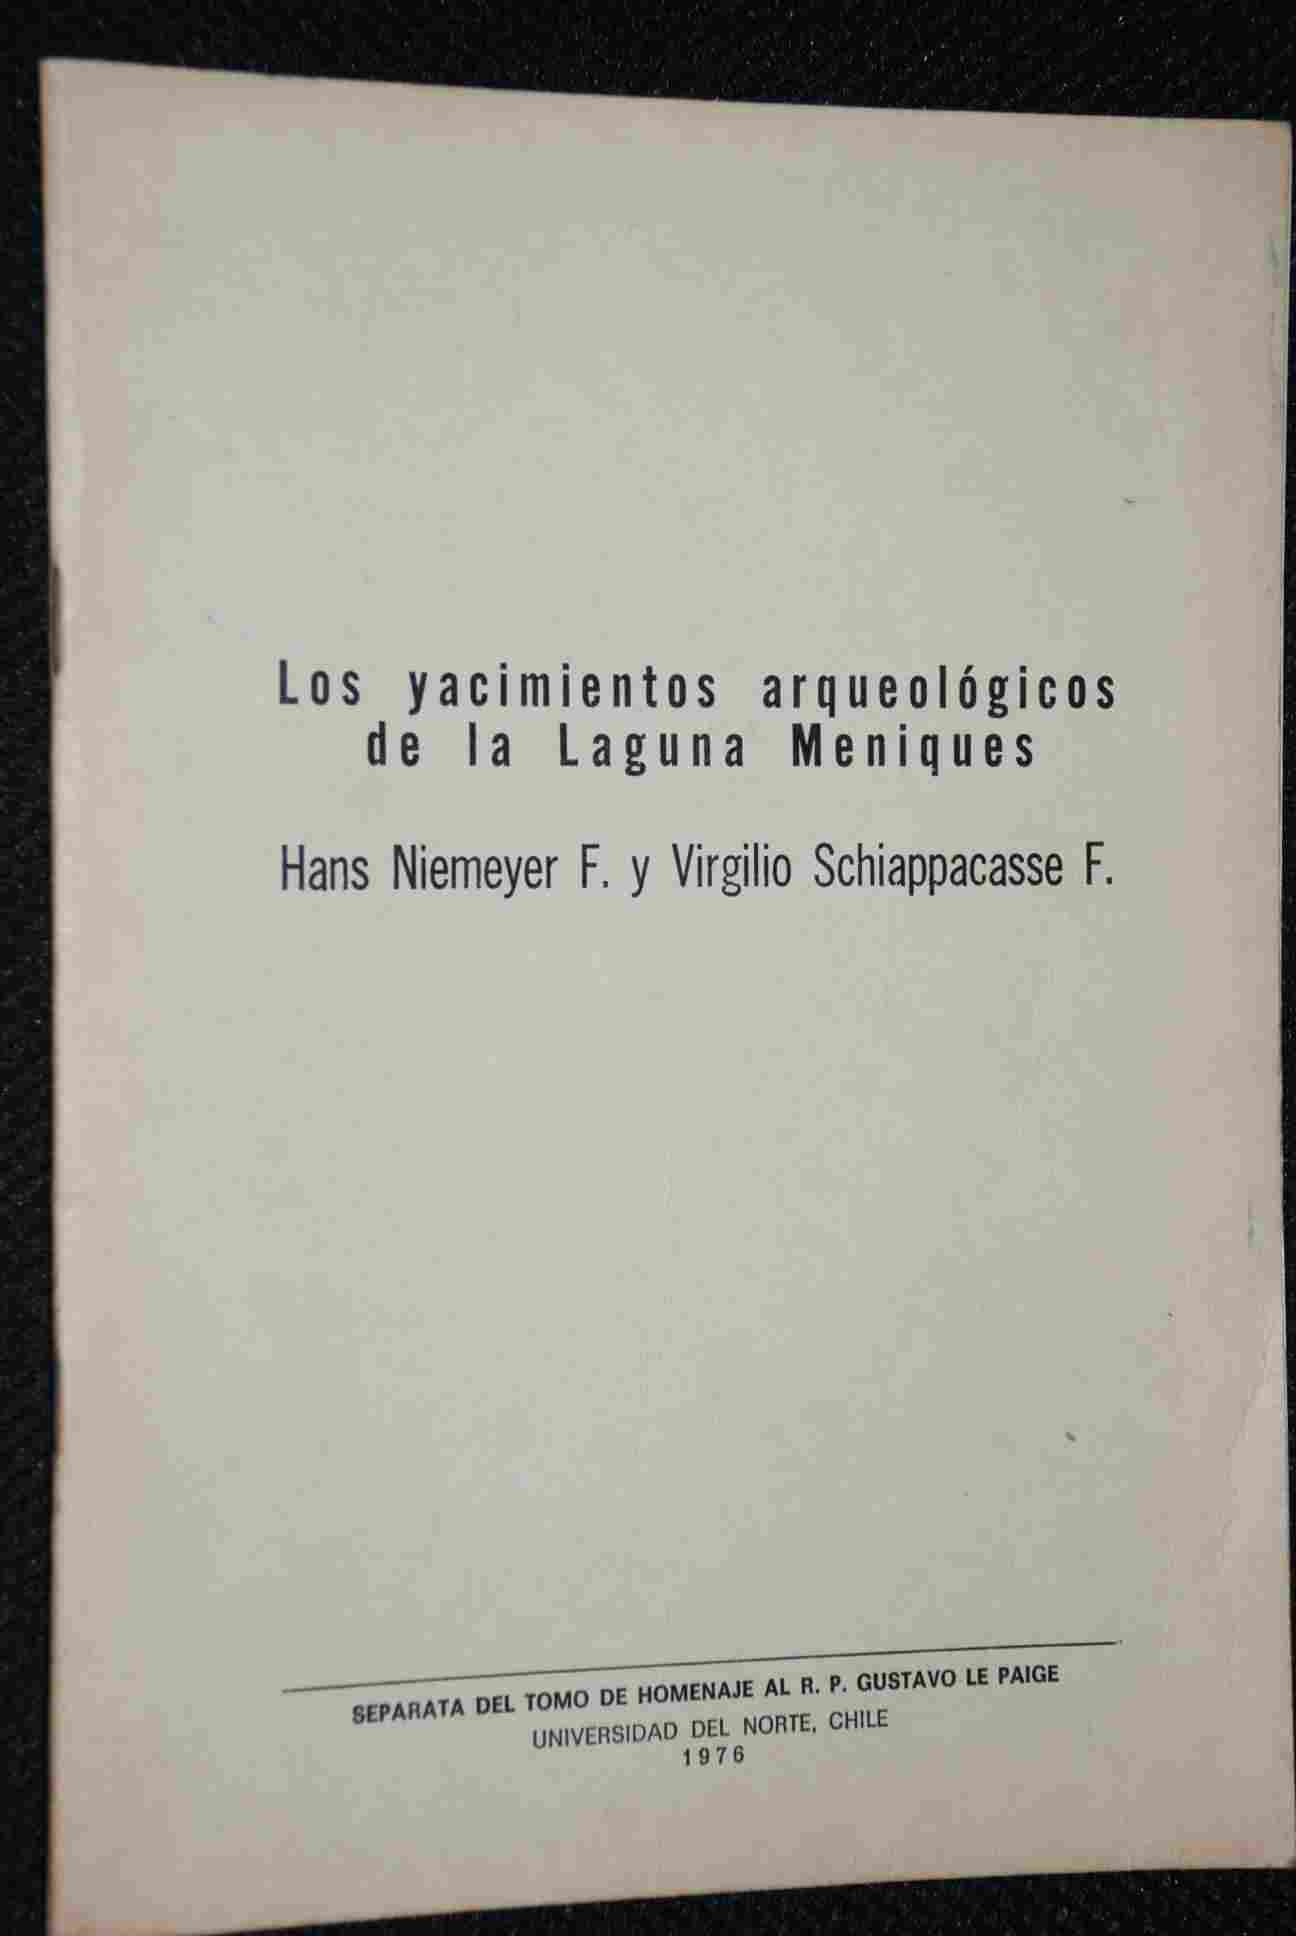 Hans Niemeyer Fernandez, Virgilio Schiappacasse F. - Los yacimientos arqueologicos de la Laguna Meniques